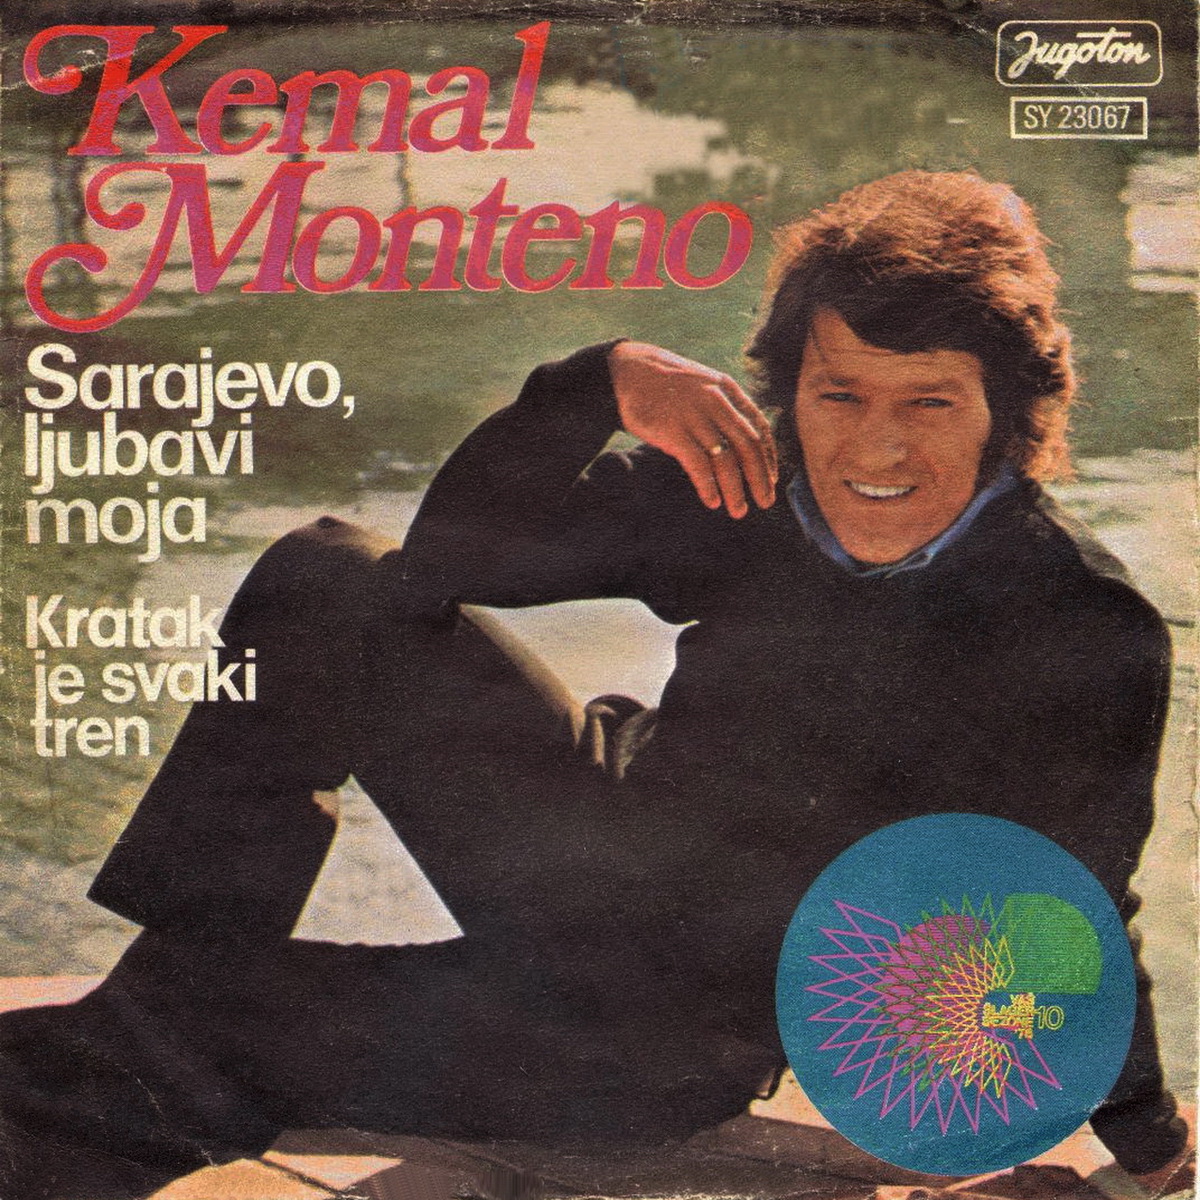 Kemal Monteno 1976 Sarajevo ljubavi moja a